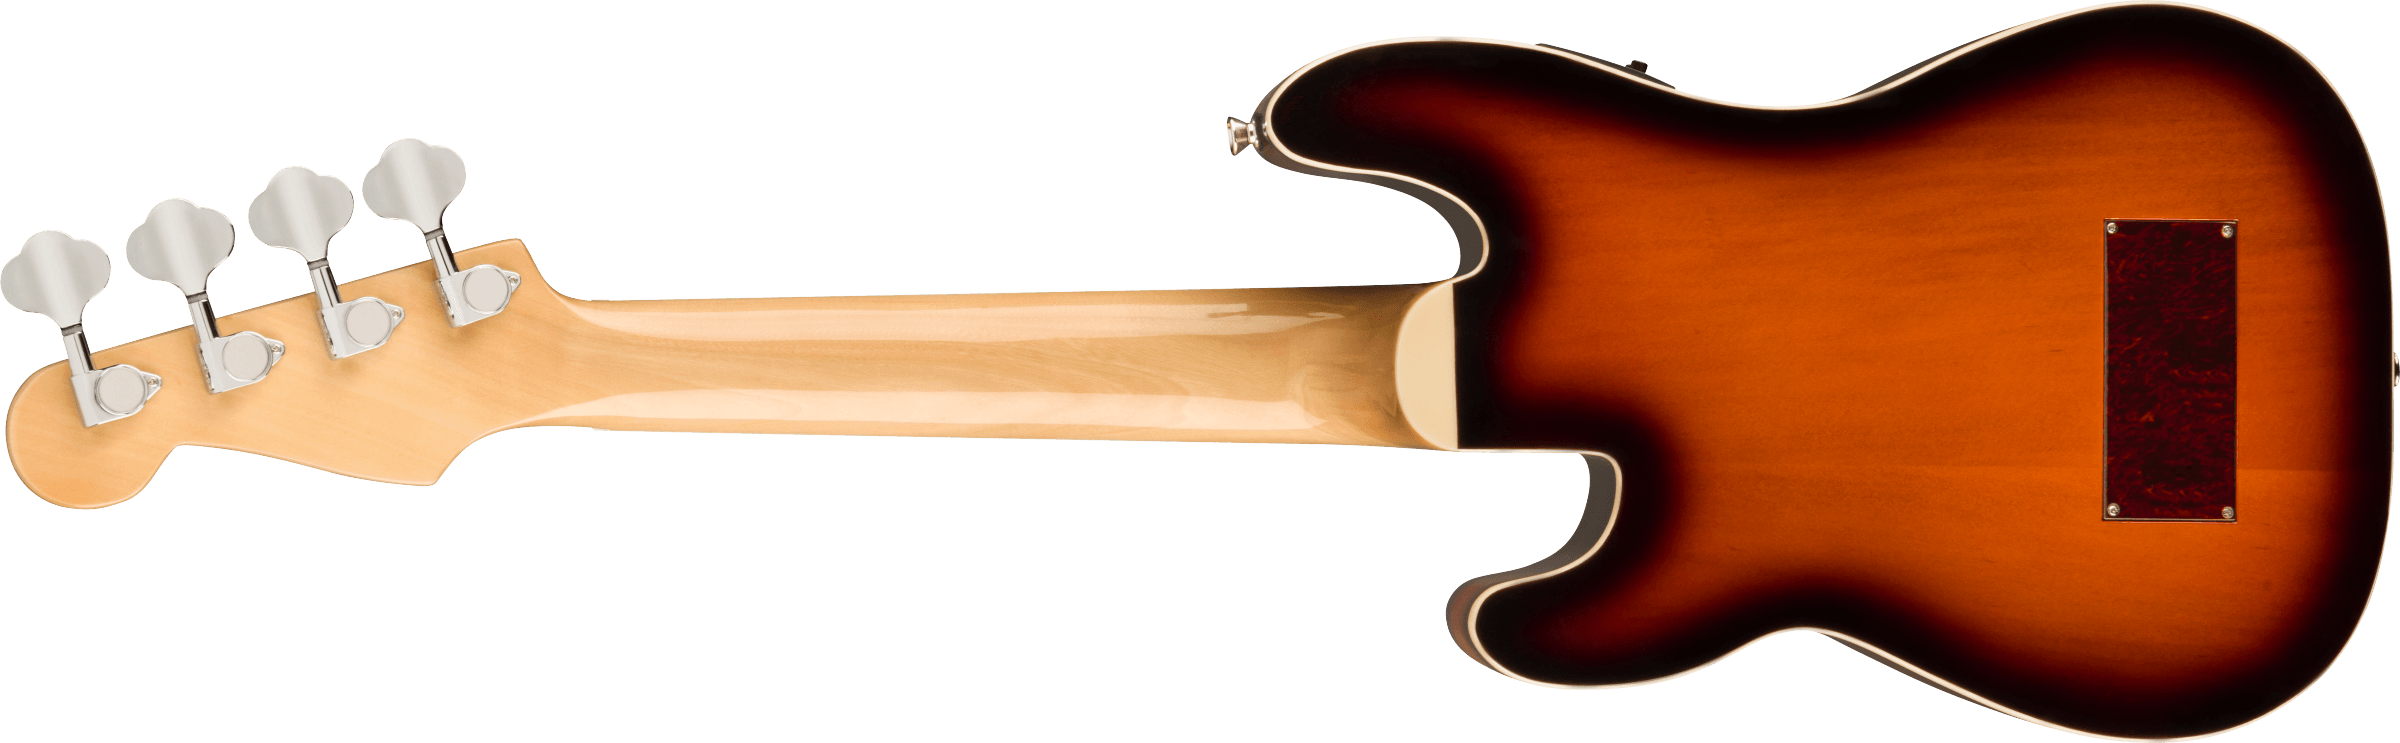 Fender Fullerton Precision Uke Concert Cw Epicea Okoume Noy - 3-color Sunburst - Ukulele - Variation 1